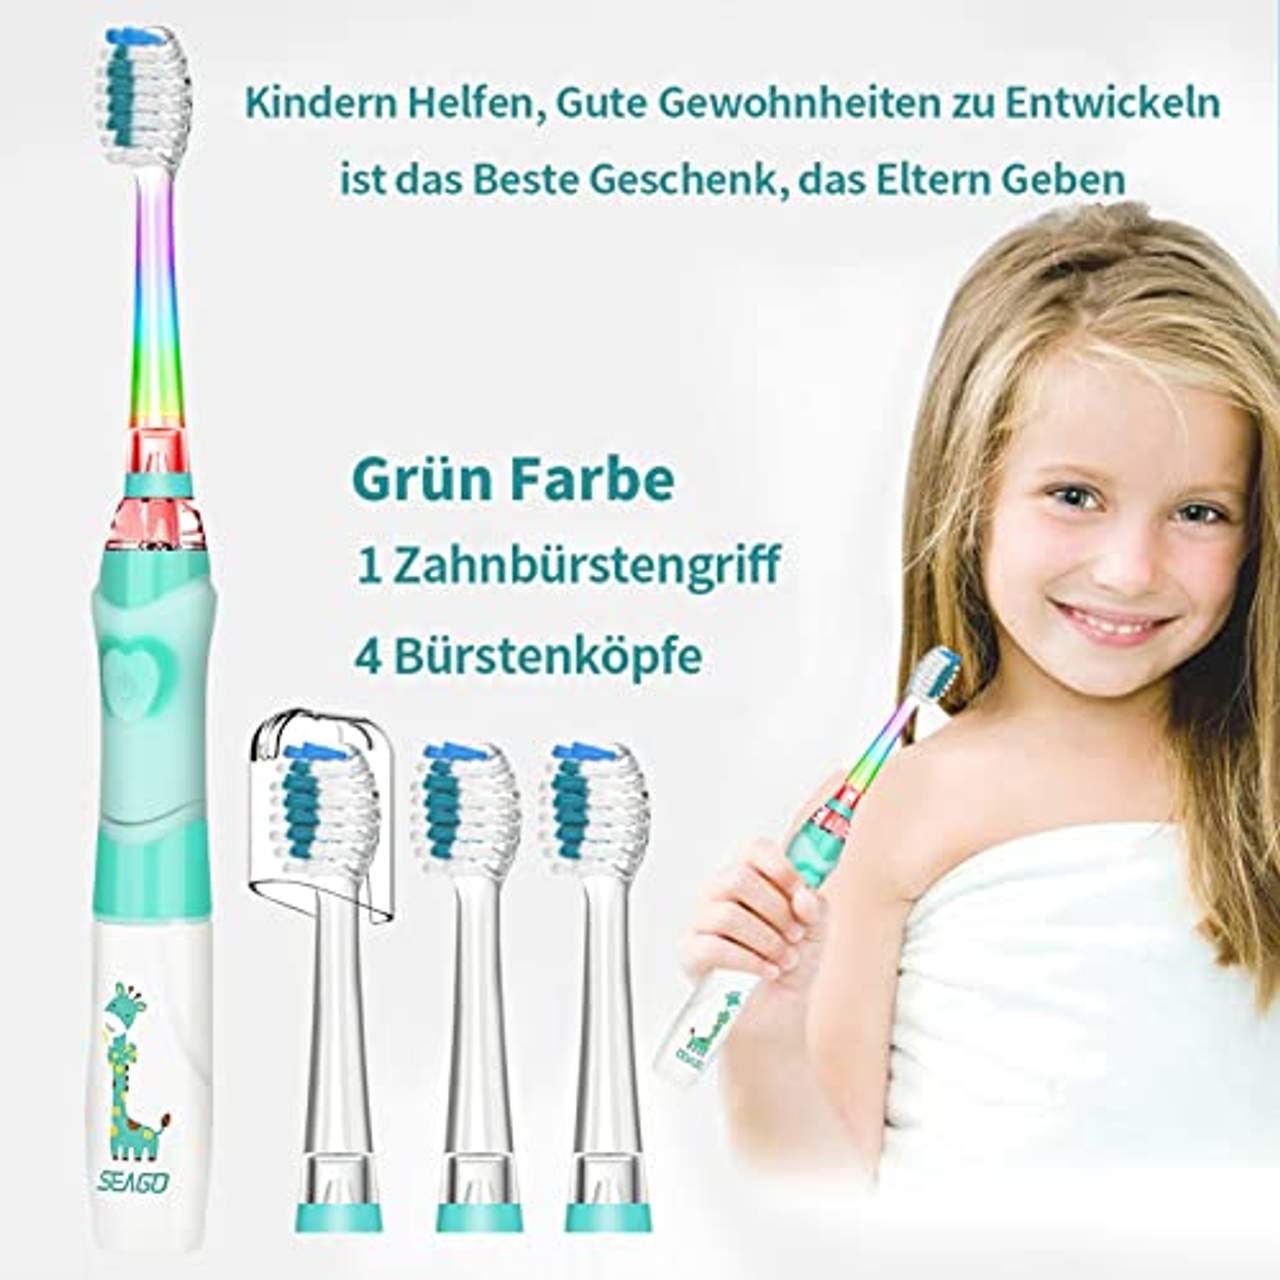 seago Elektrische Zahnbürste Kinder ab 3-12 jahre Kinderzahnbürsten